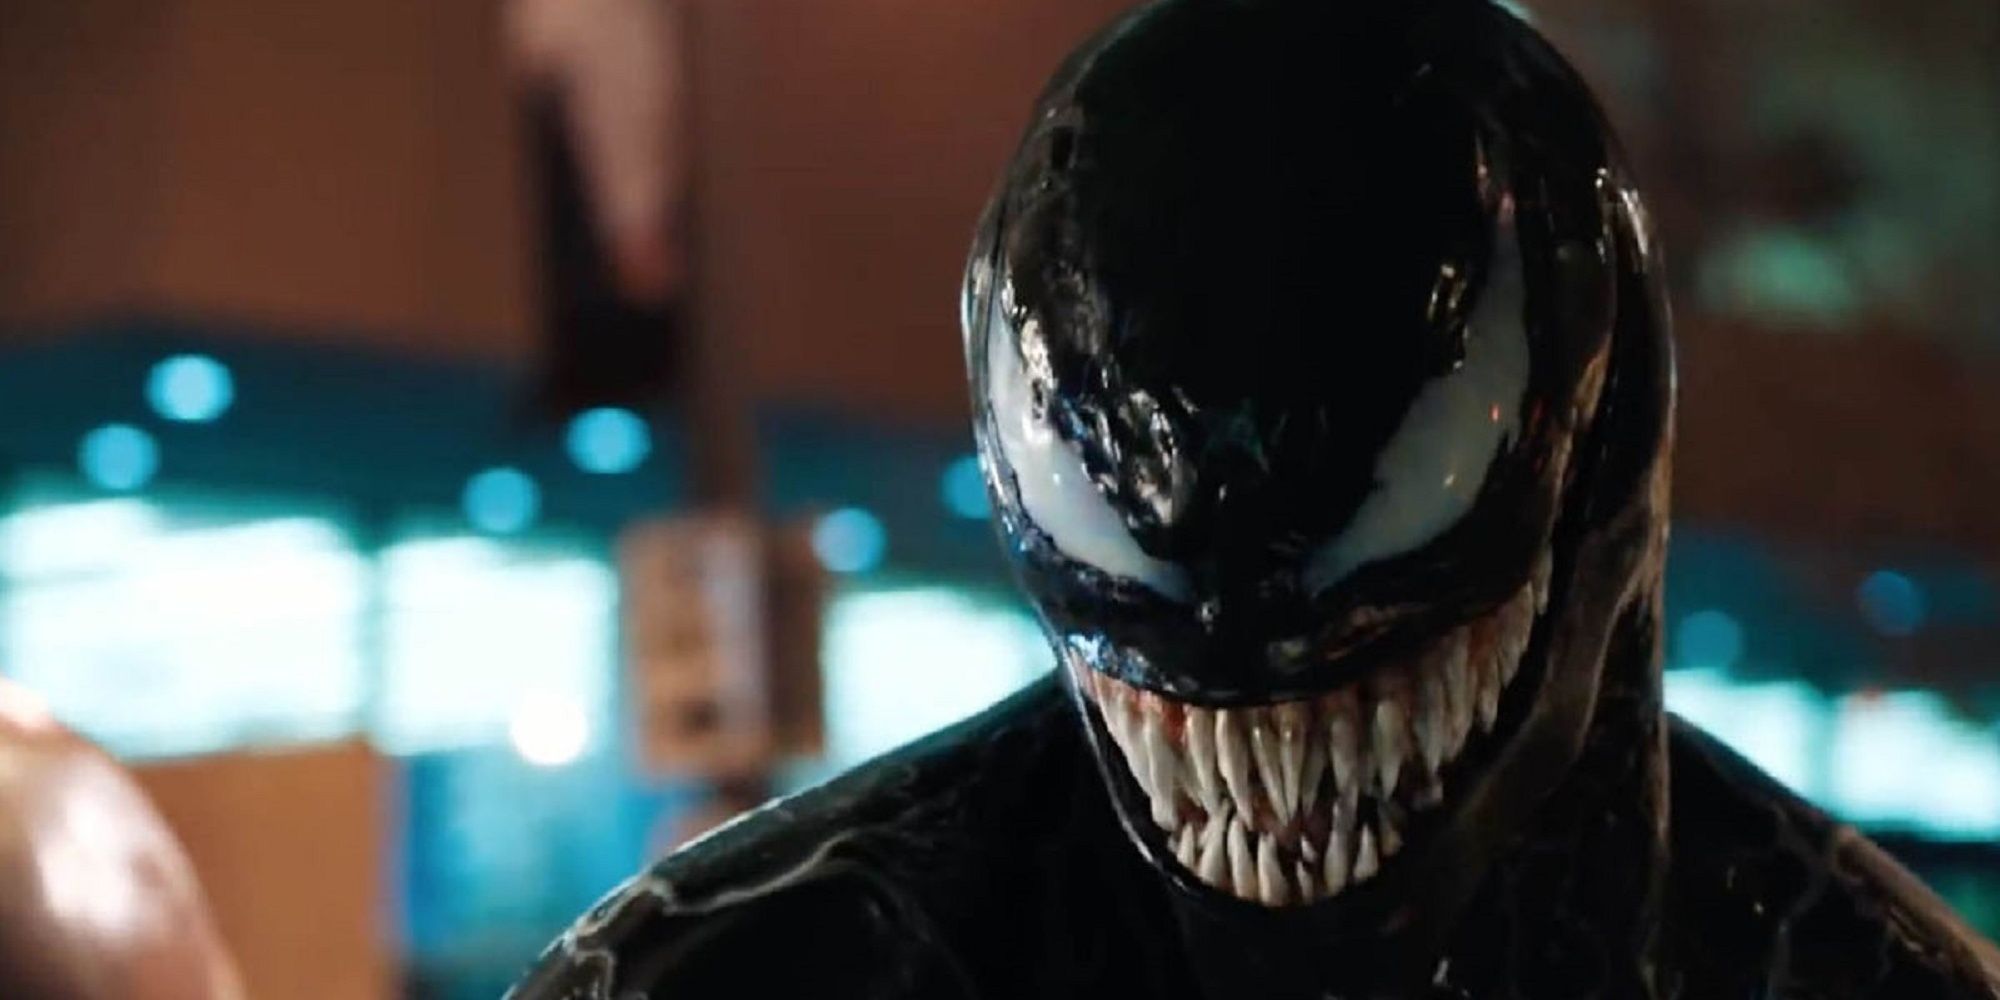 Venom smiling at the camera in Venom.